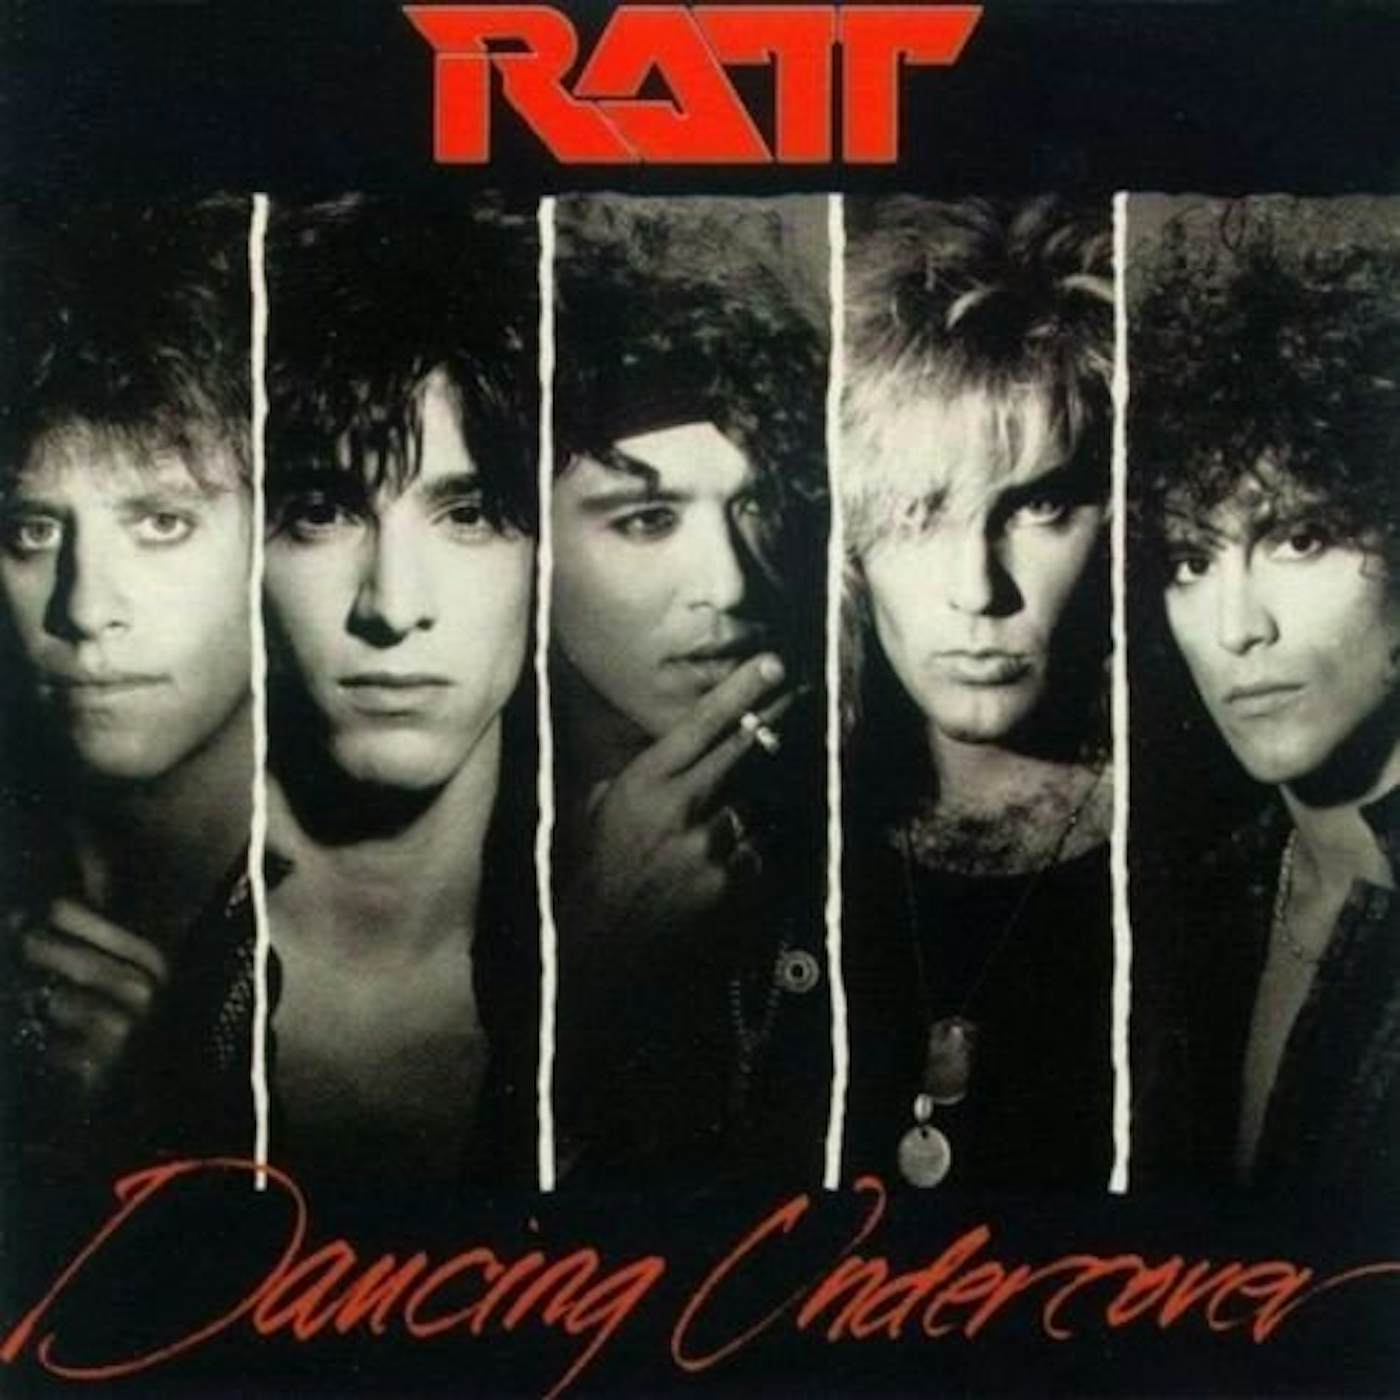 Ratt DANCING UNDERCOVER CD